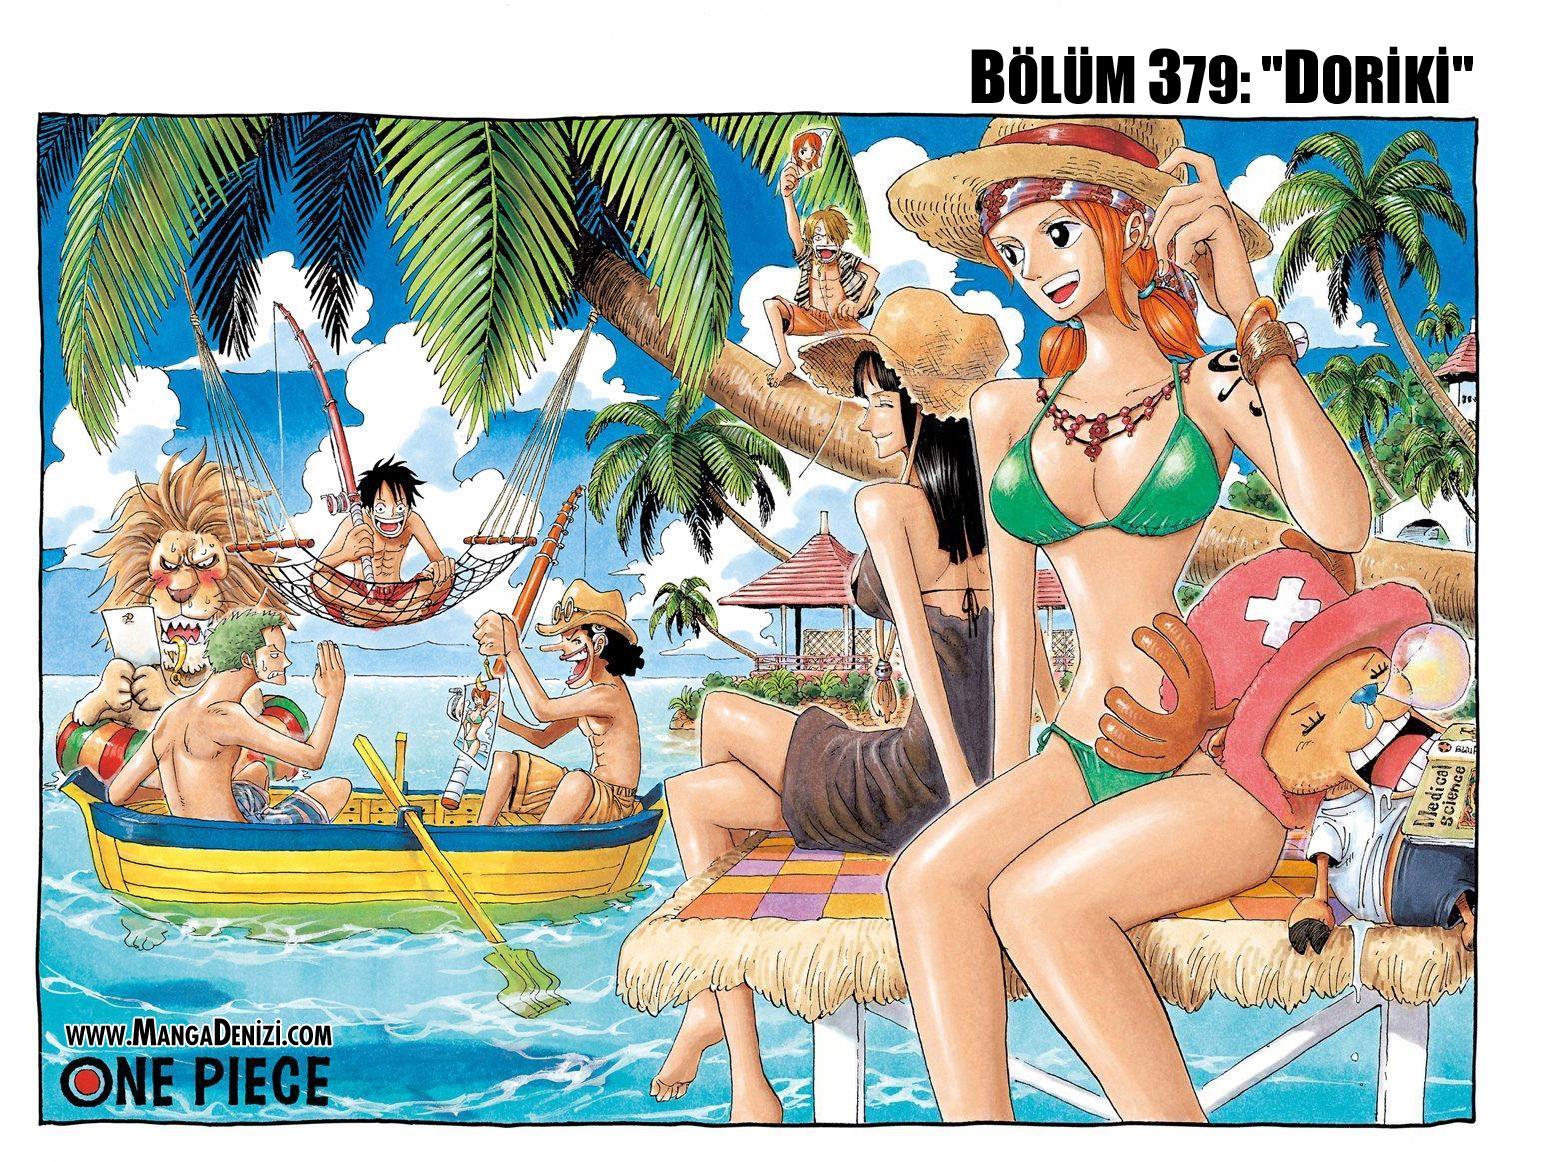 One Piece [Renkli] mangasının 0379 bölümünün 2. sayfasını okuyorsunuz.